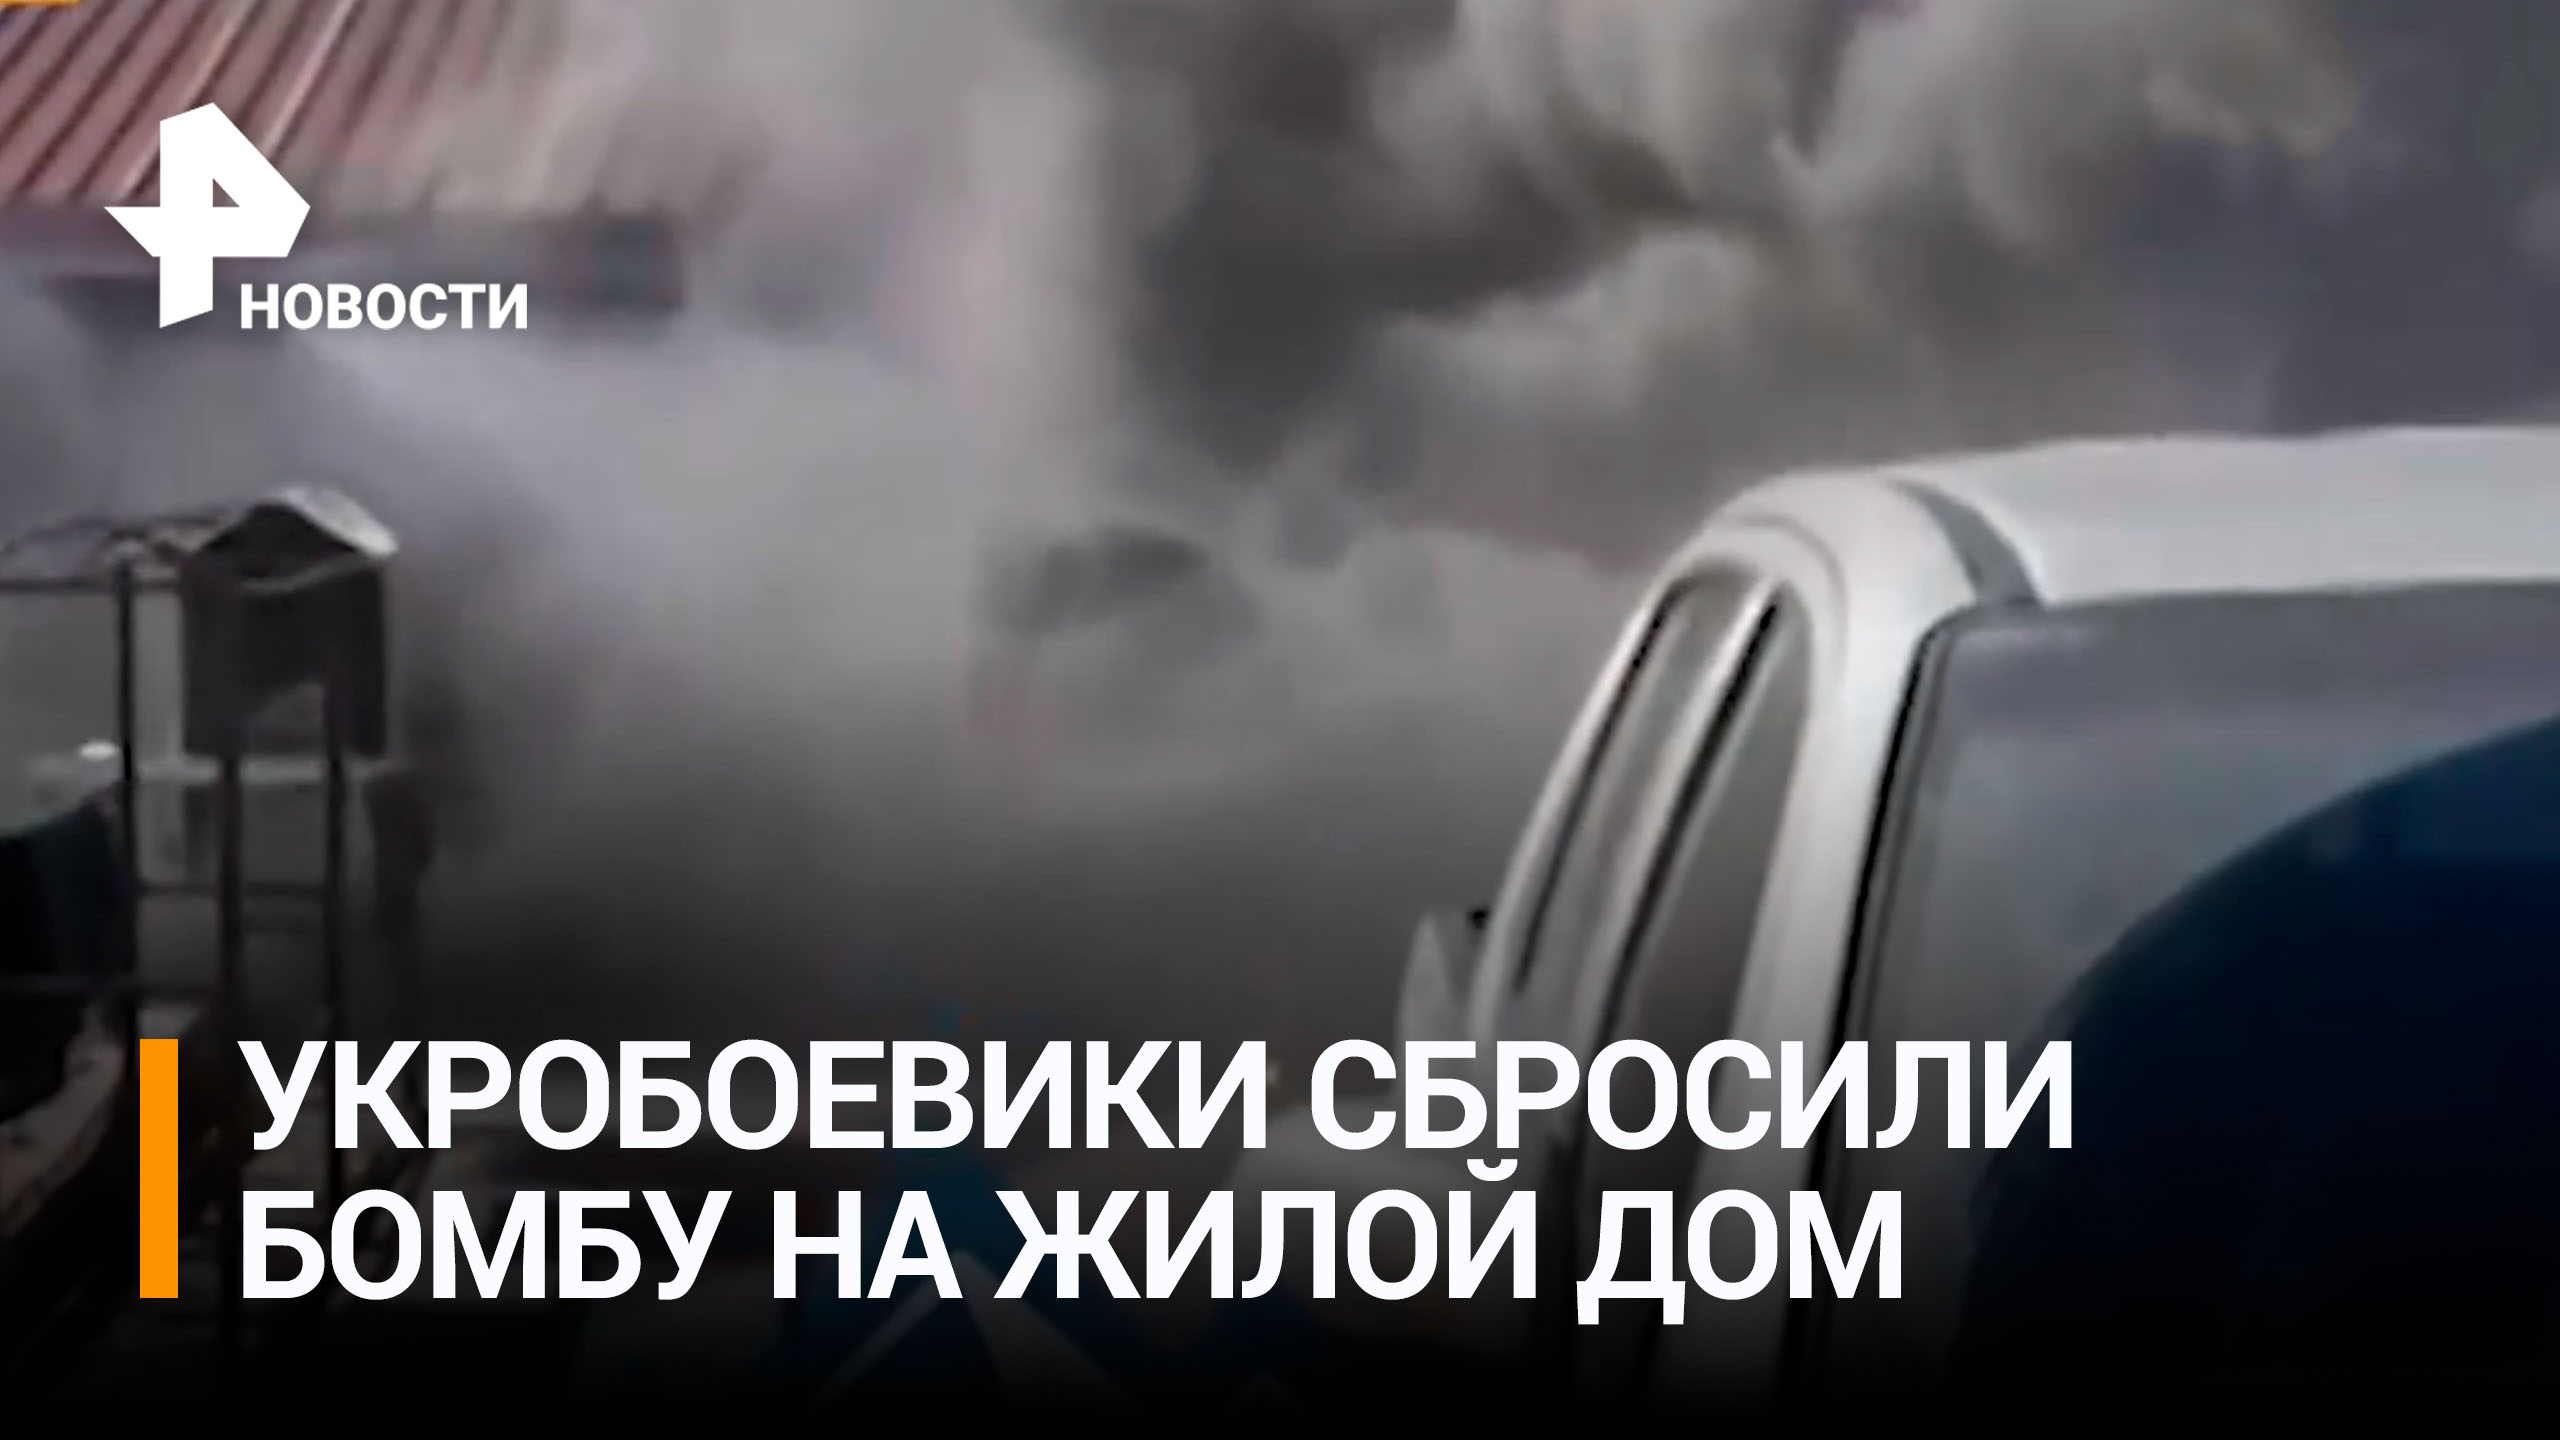 ВСУ сбросили с беспилотника бомбу на жилой дом в Донецке / РЕН Новости